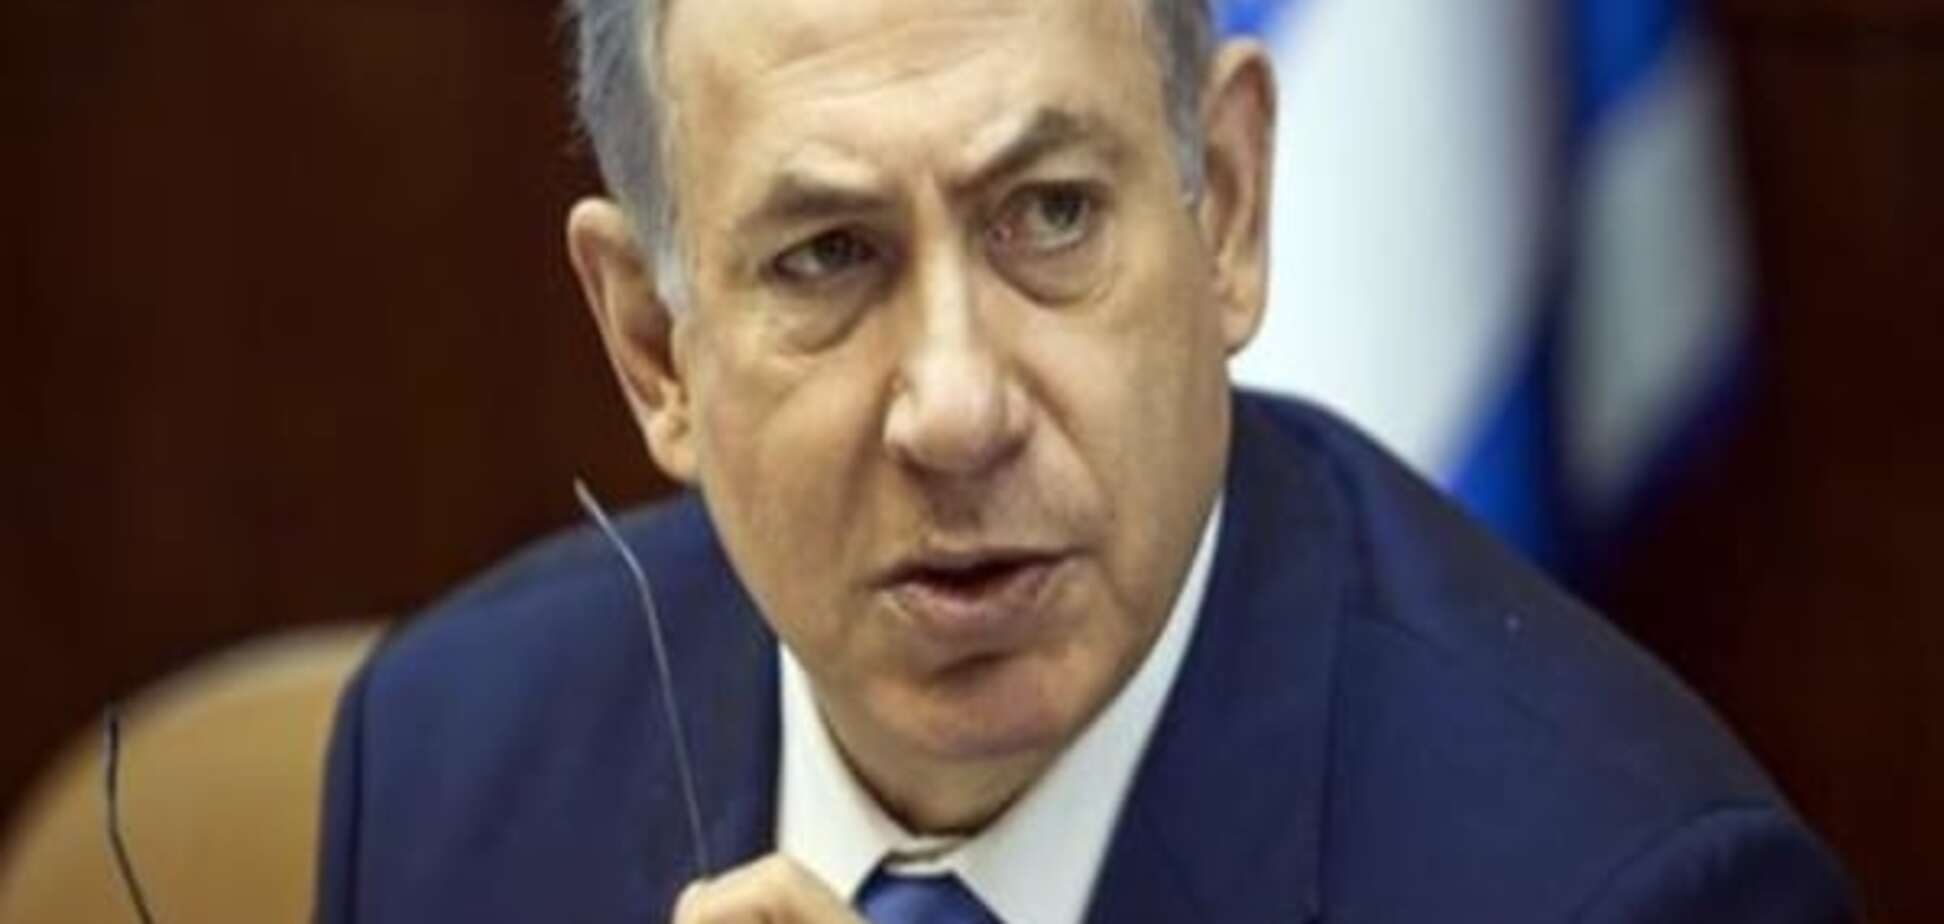 Ізраїль відхилив мирну ініціативу Франції щодо врегулювання конфлікту на Близькому Сході